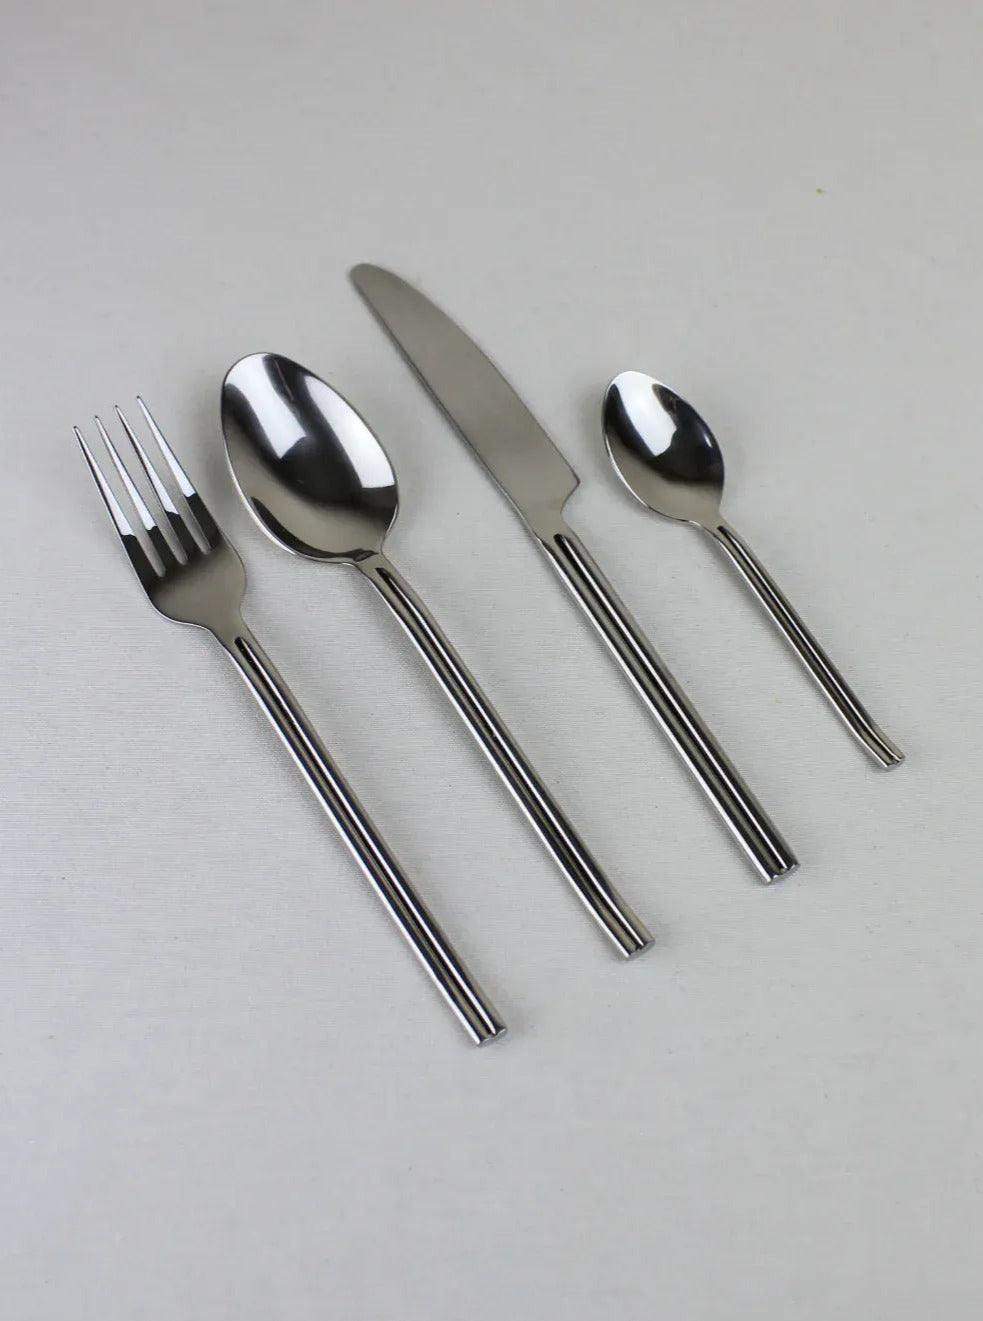 Minimal Italian Style Cutlery